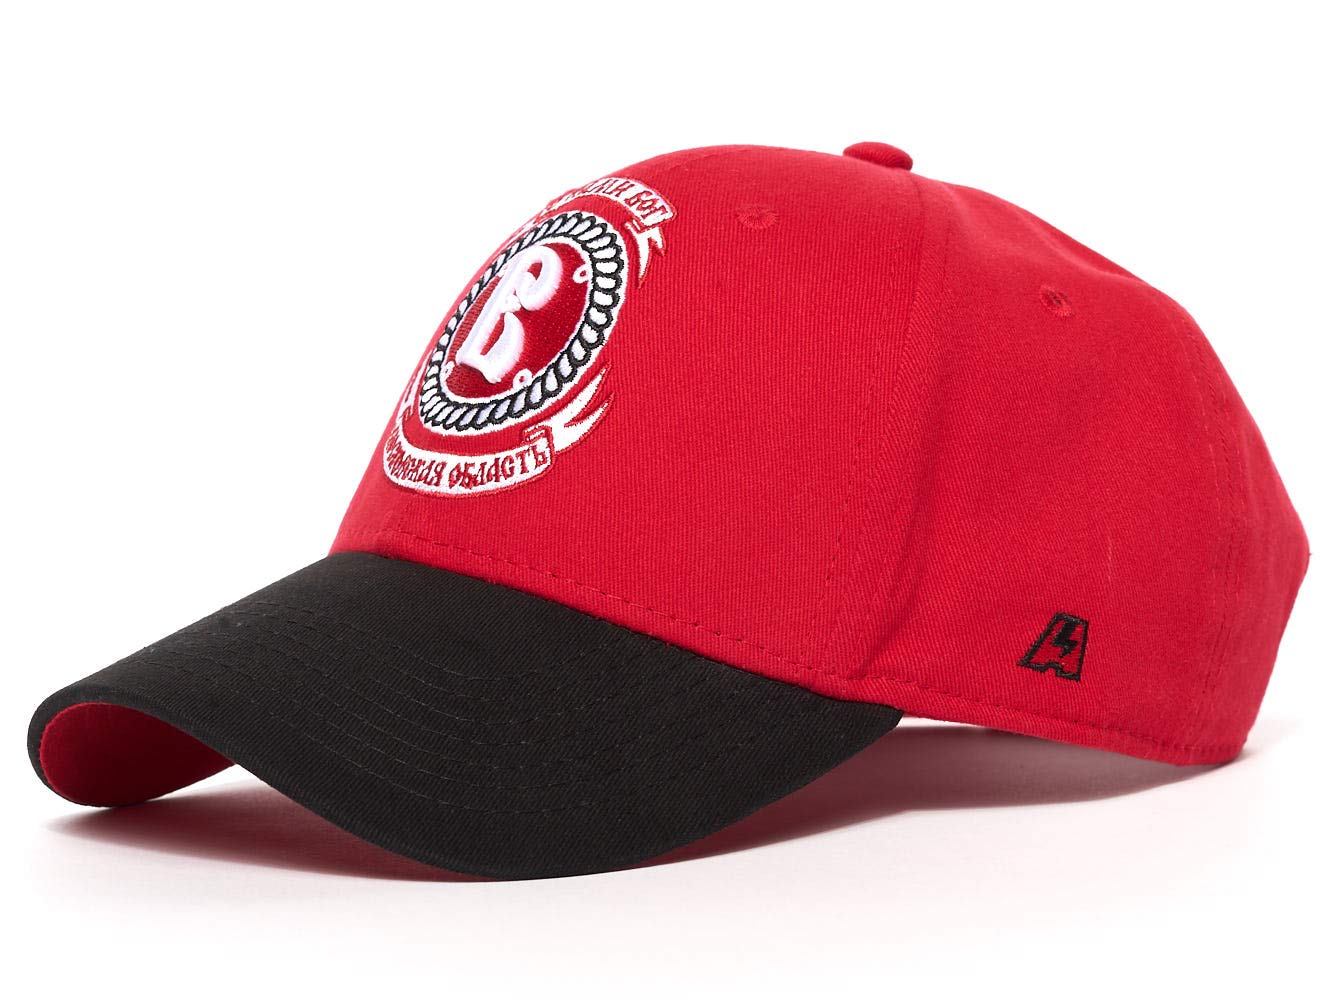 Vityaz Logo - Amazon.com : Atributika & Club HC Vityaz Podolsk, KHL Hockey Cap hat